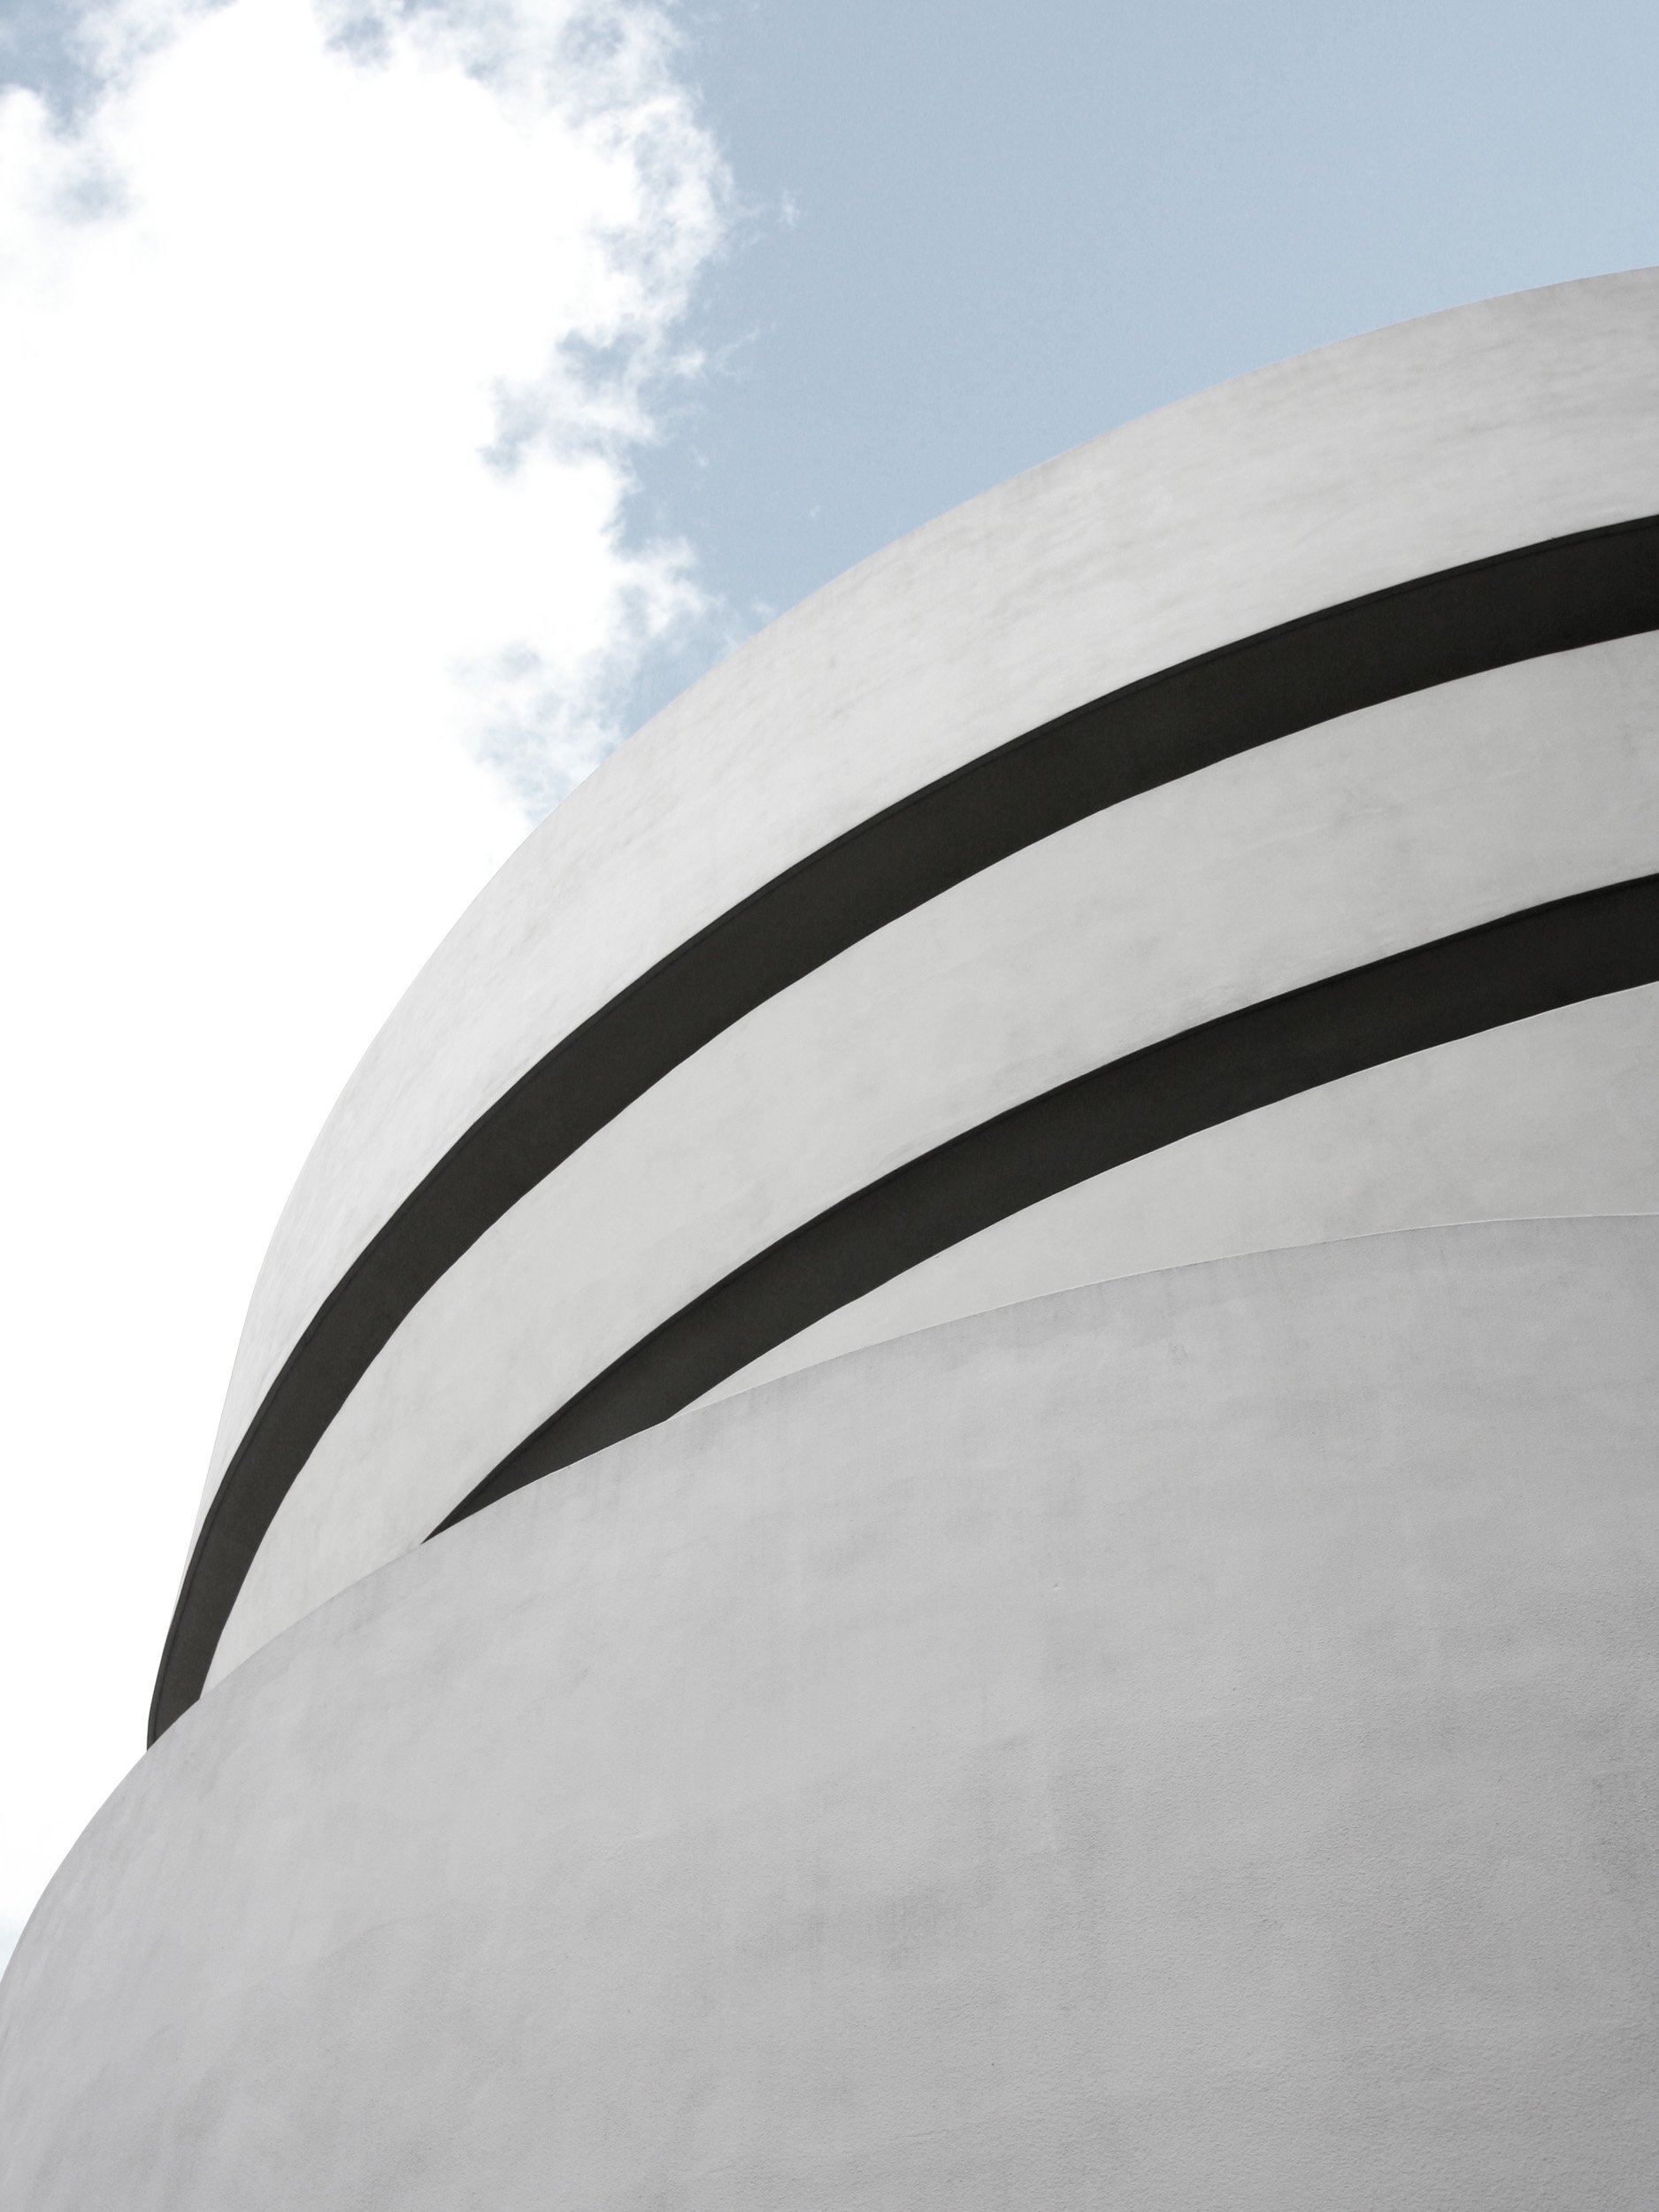 Guggenheim museum NY.jpg